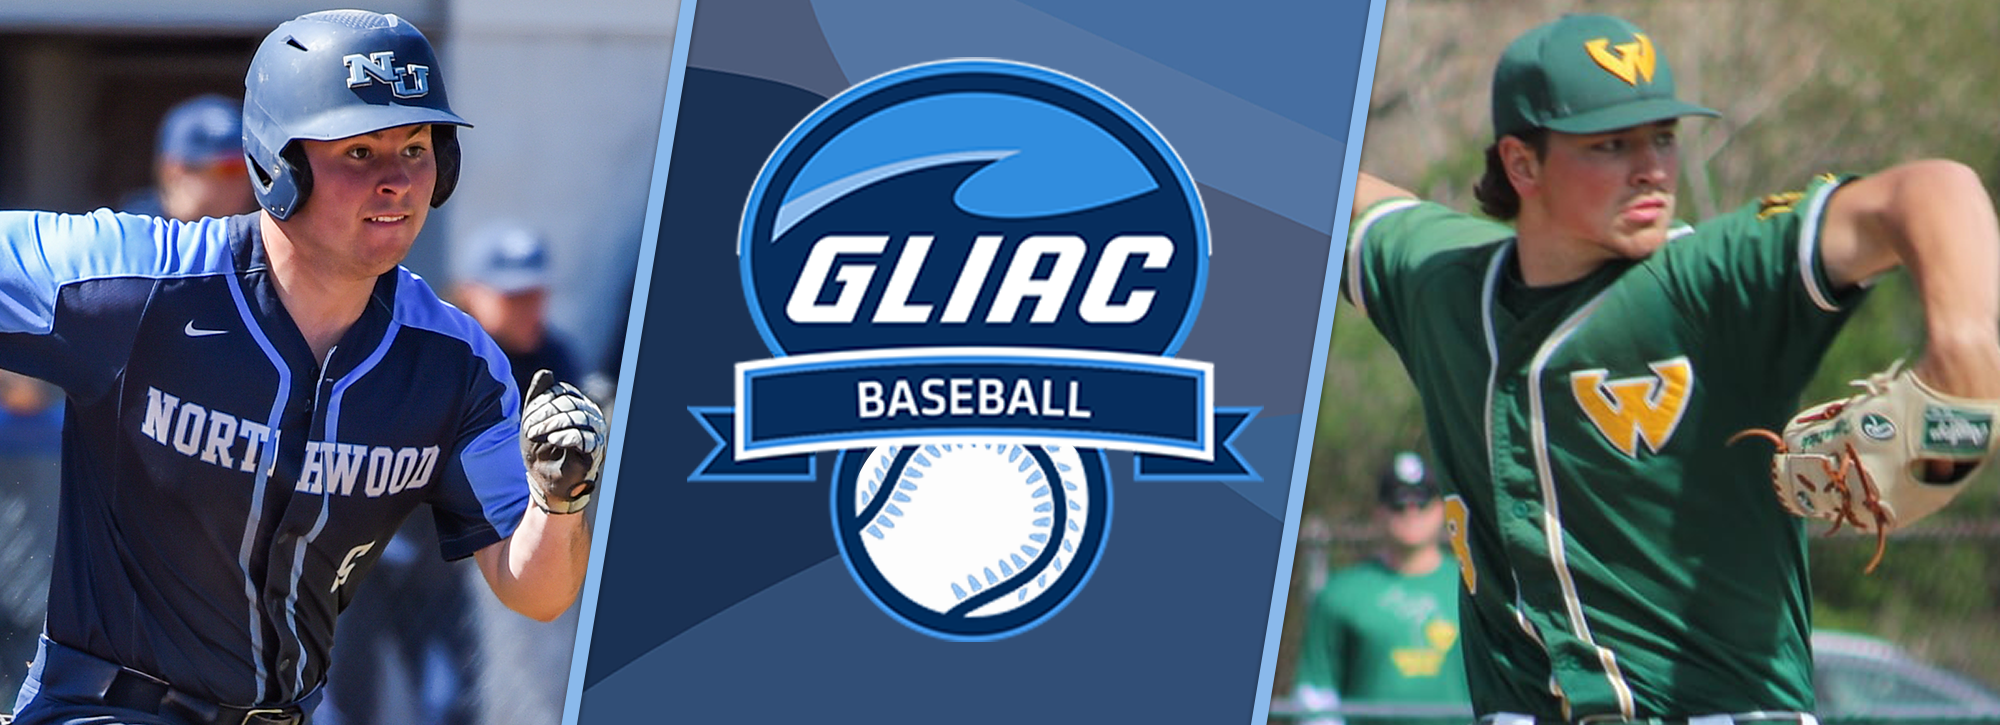 NU's Showers and WSU's Fitzpatrick earn GLIAC baseball weekly honors